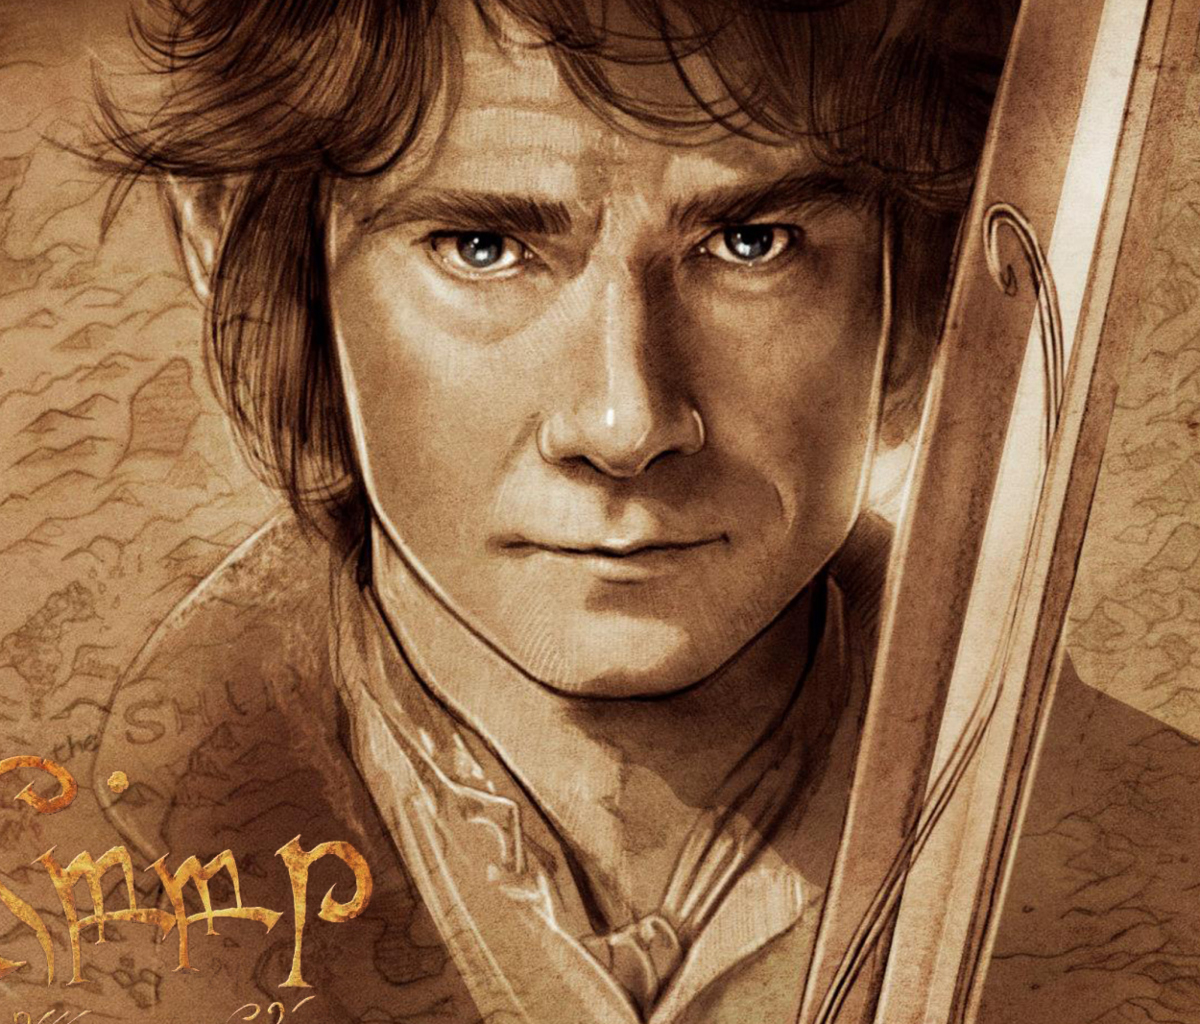 The Hobbit Bilbo Baggins Artwork wallpaper 1200x1024